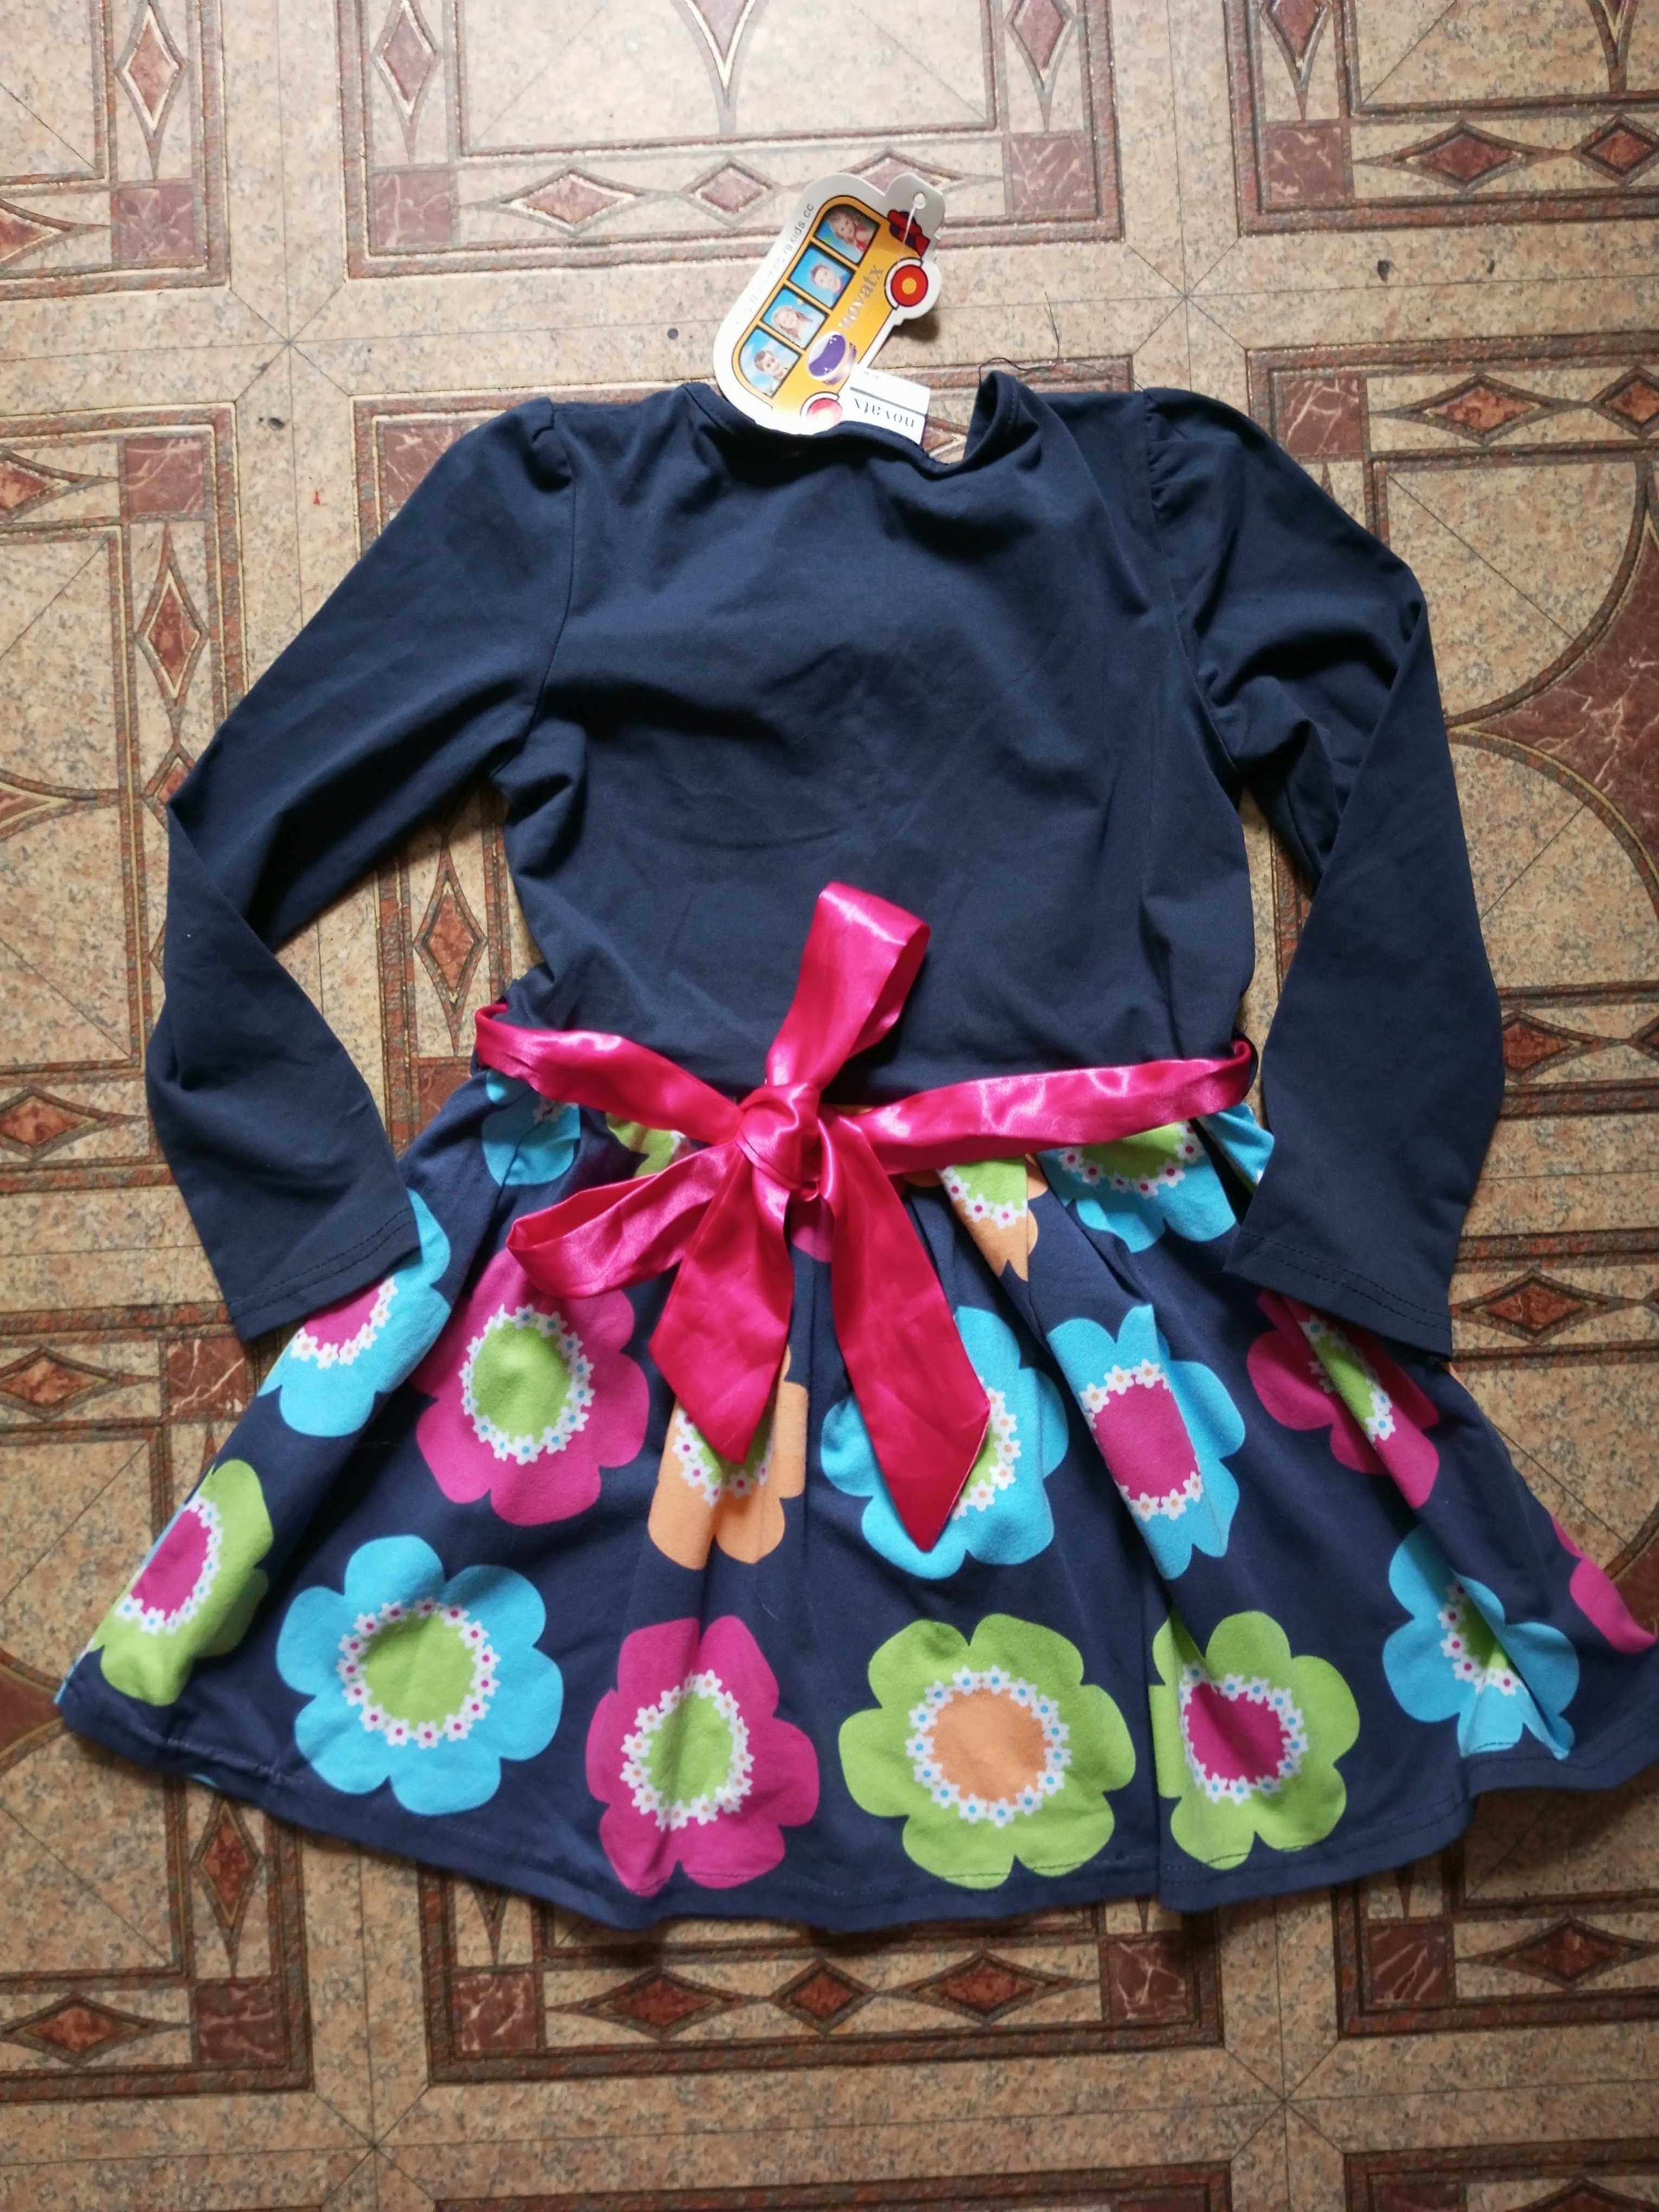 Новое брендовое платье на девочку около 4-5лет.+ носки + игра домино.